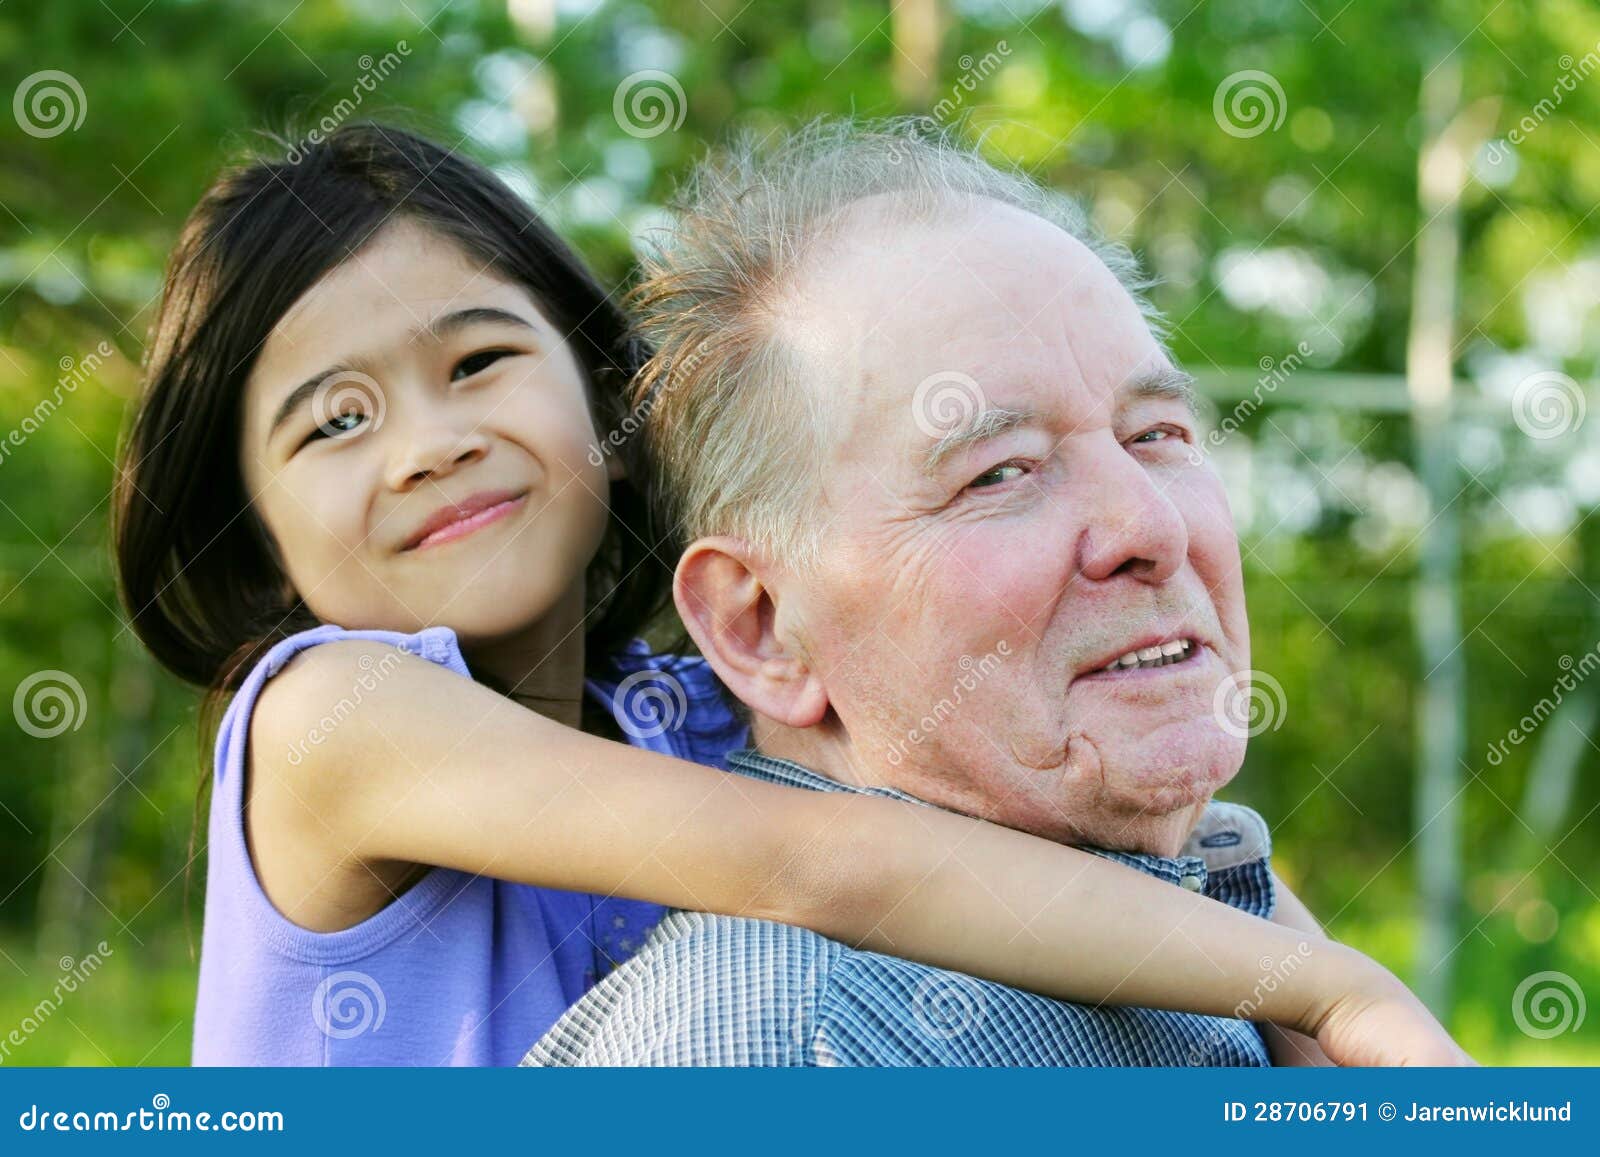 старик и малолетка минет фото 8